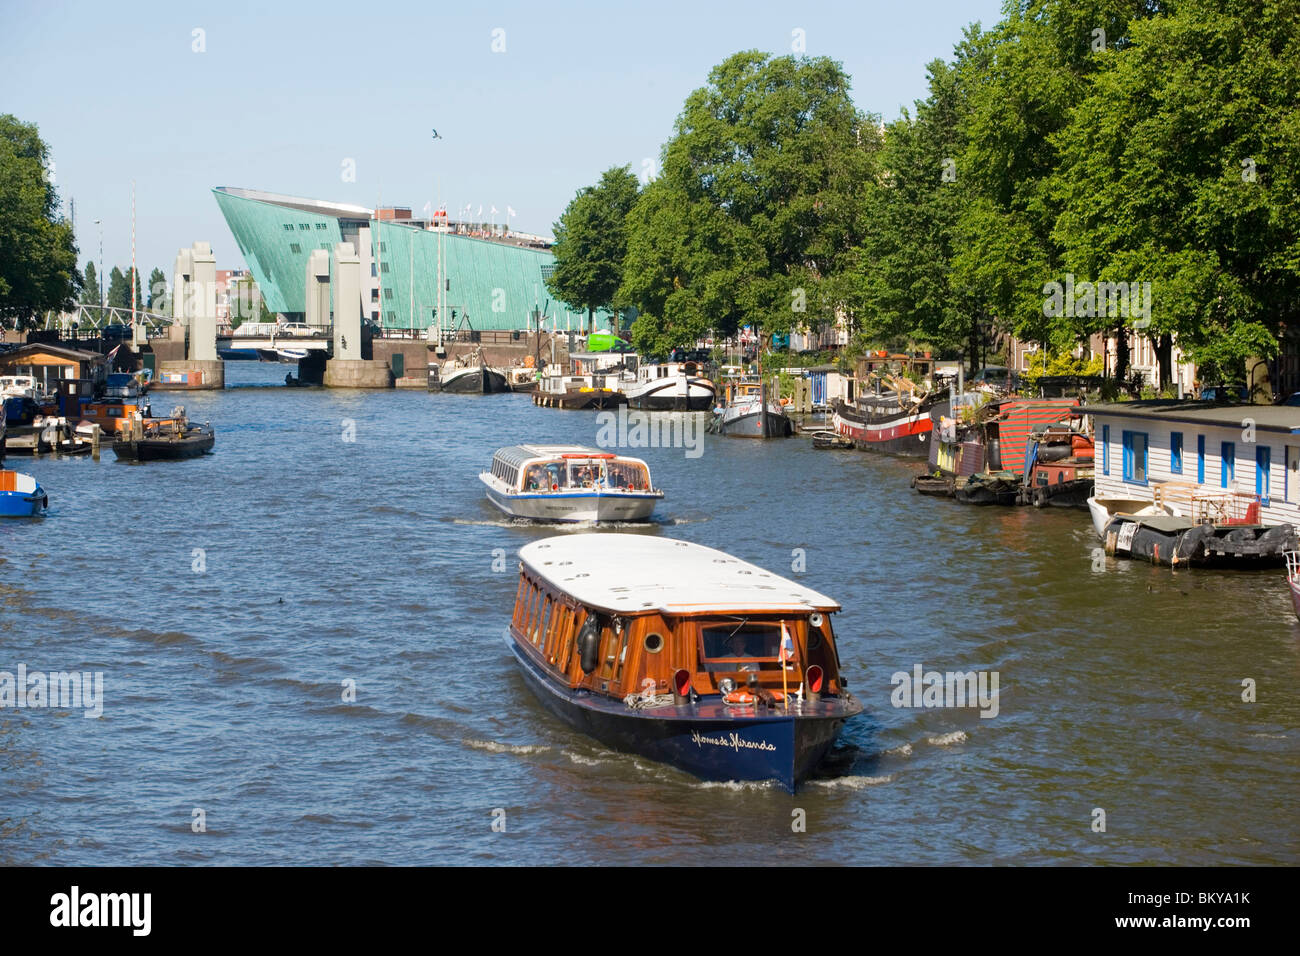 NEMO Museum, Oude Schans, bateaux, vue sur l'Oude Schans avec des bateaux d'excursion à NEMO Museum, Amsterdam, Hollande, Pays-Bas Banque D'Images